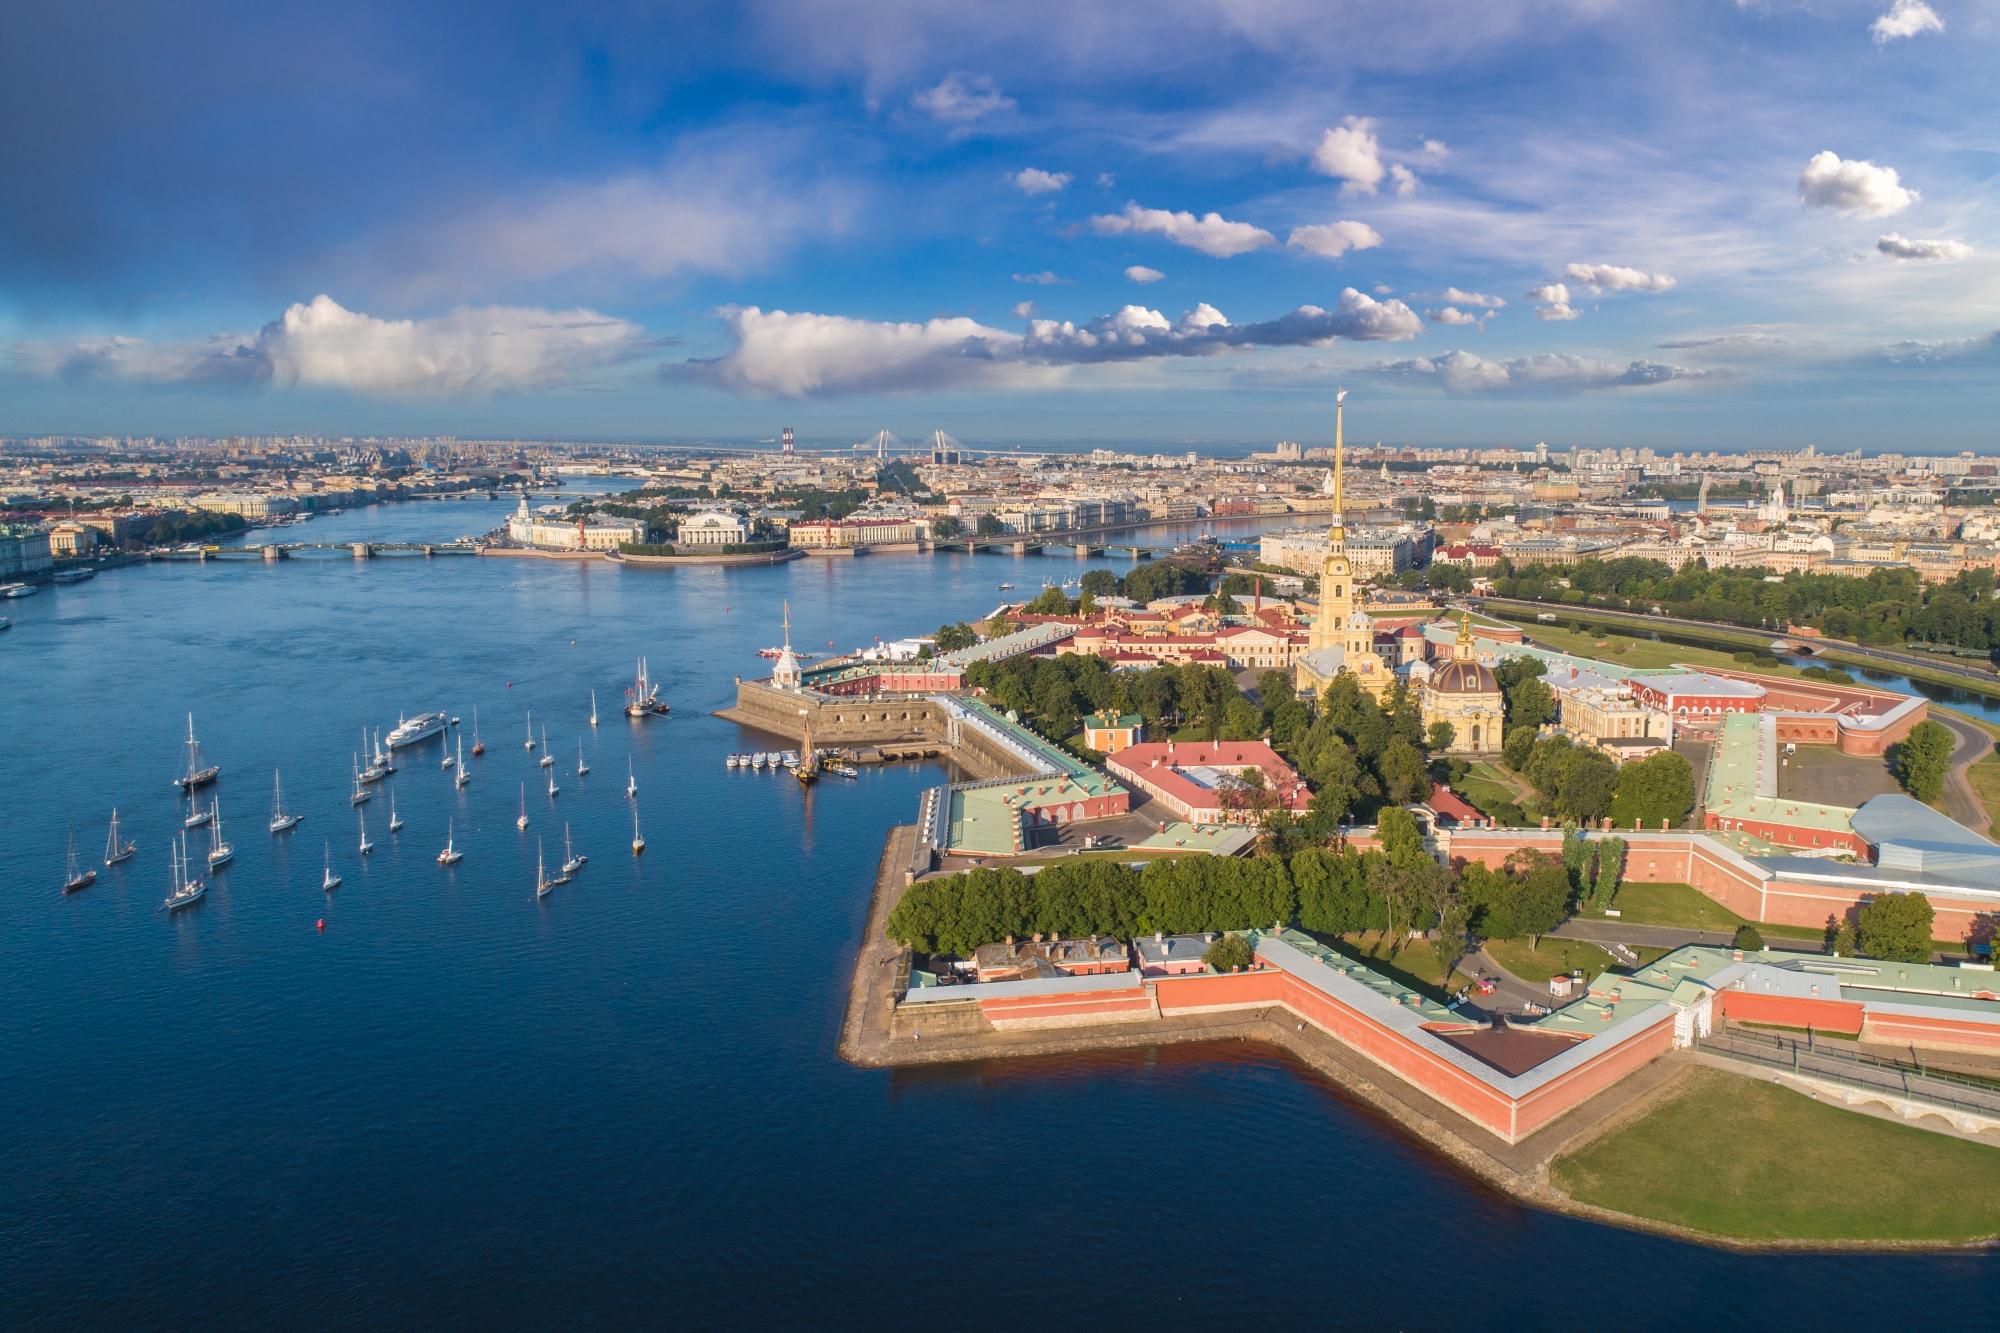 Обзорная экскурсия «Величественный Петербург» с посещением Петропавловской крепости со скидкой до 51%